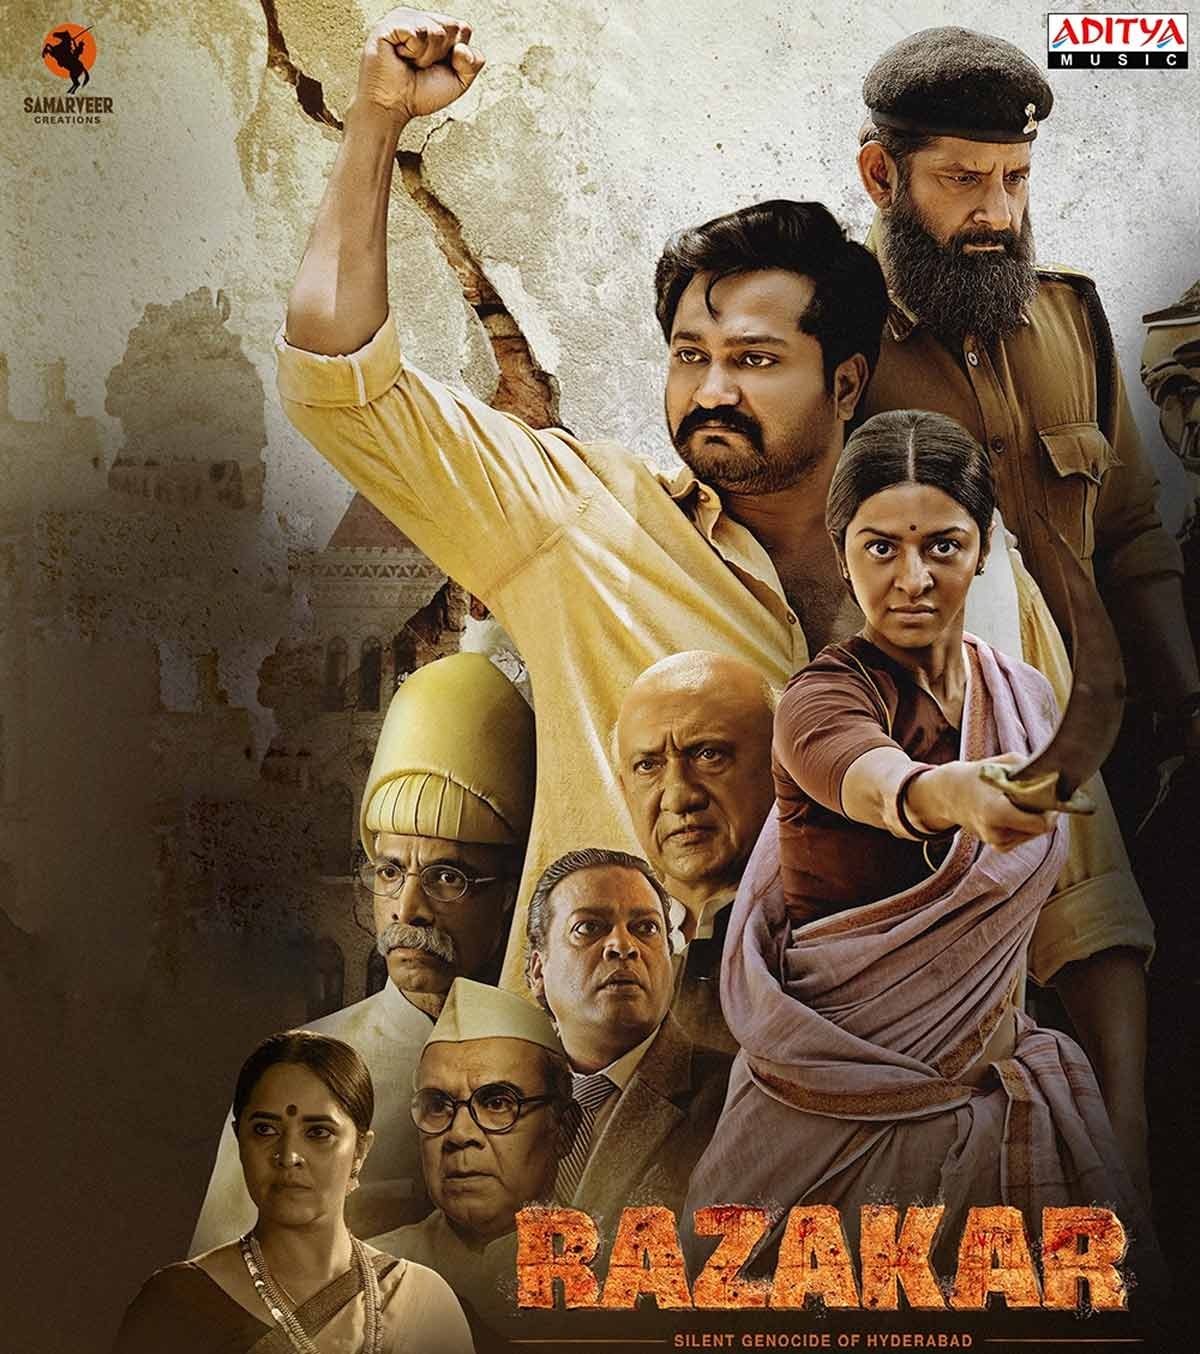 Razakaar movie review